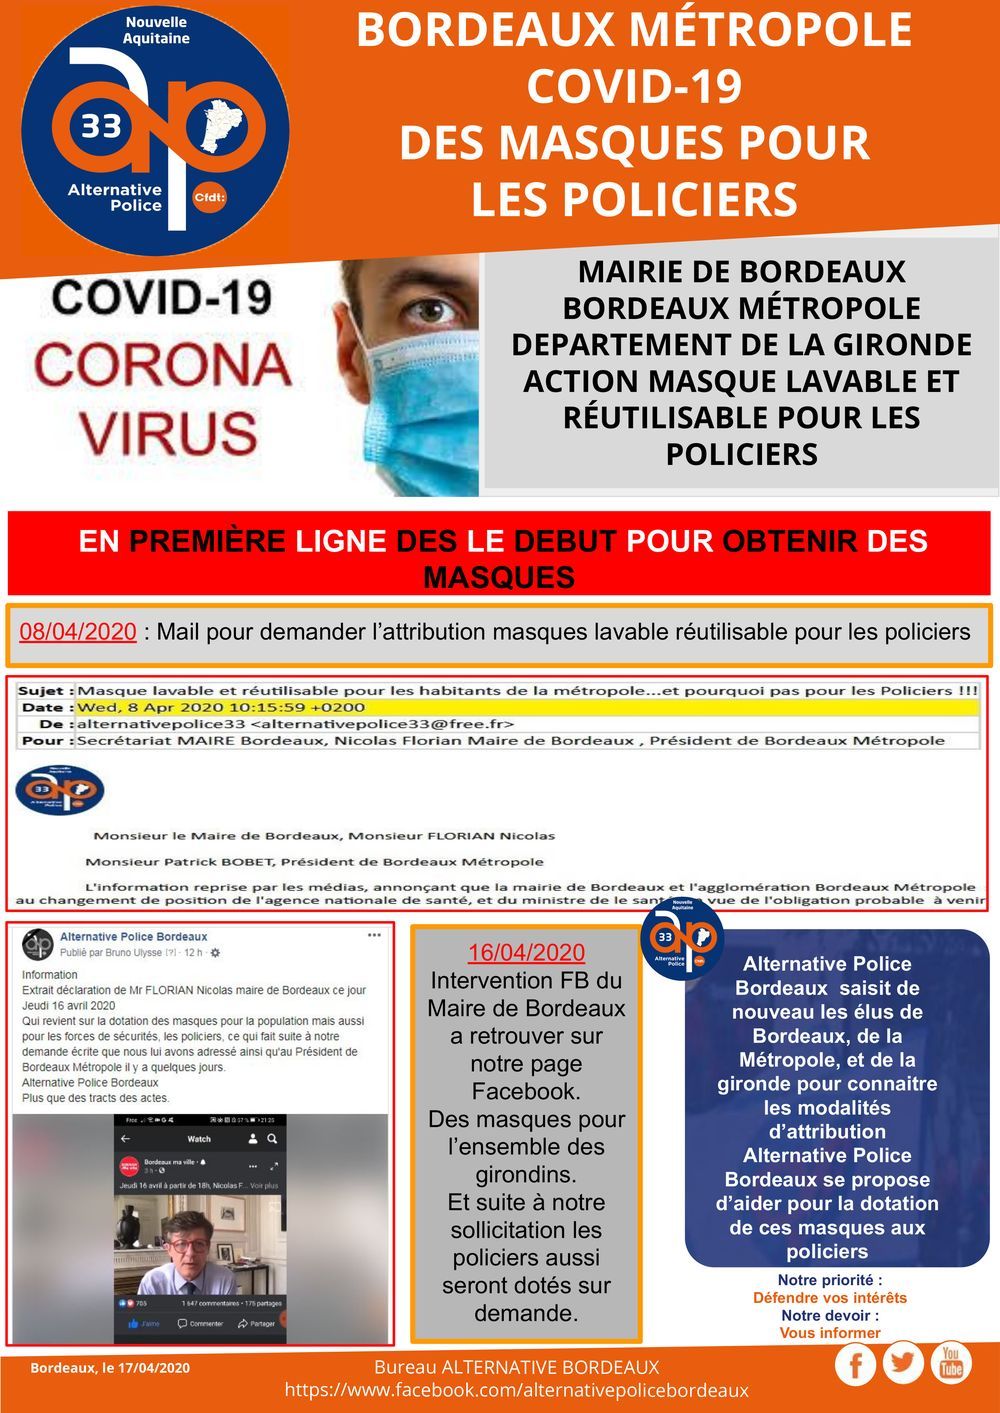 Covid-19 : action masque lavable et réutilisable pour les policiers en première ligne à Bordeaux 